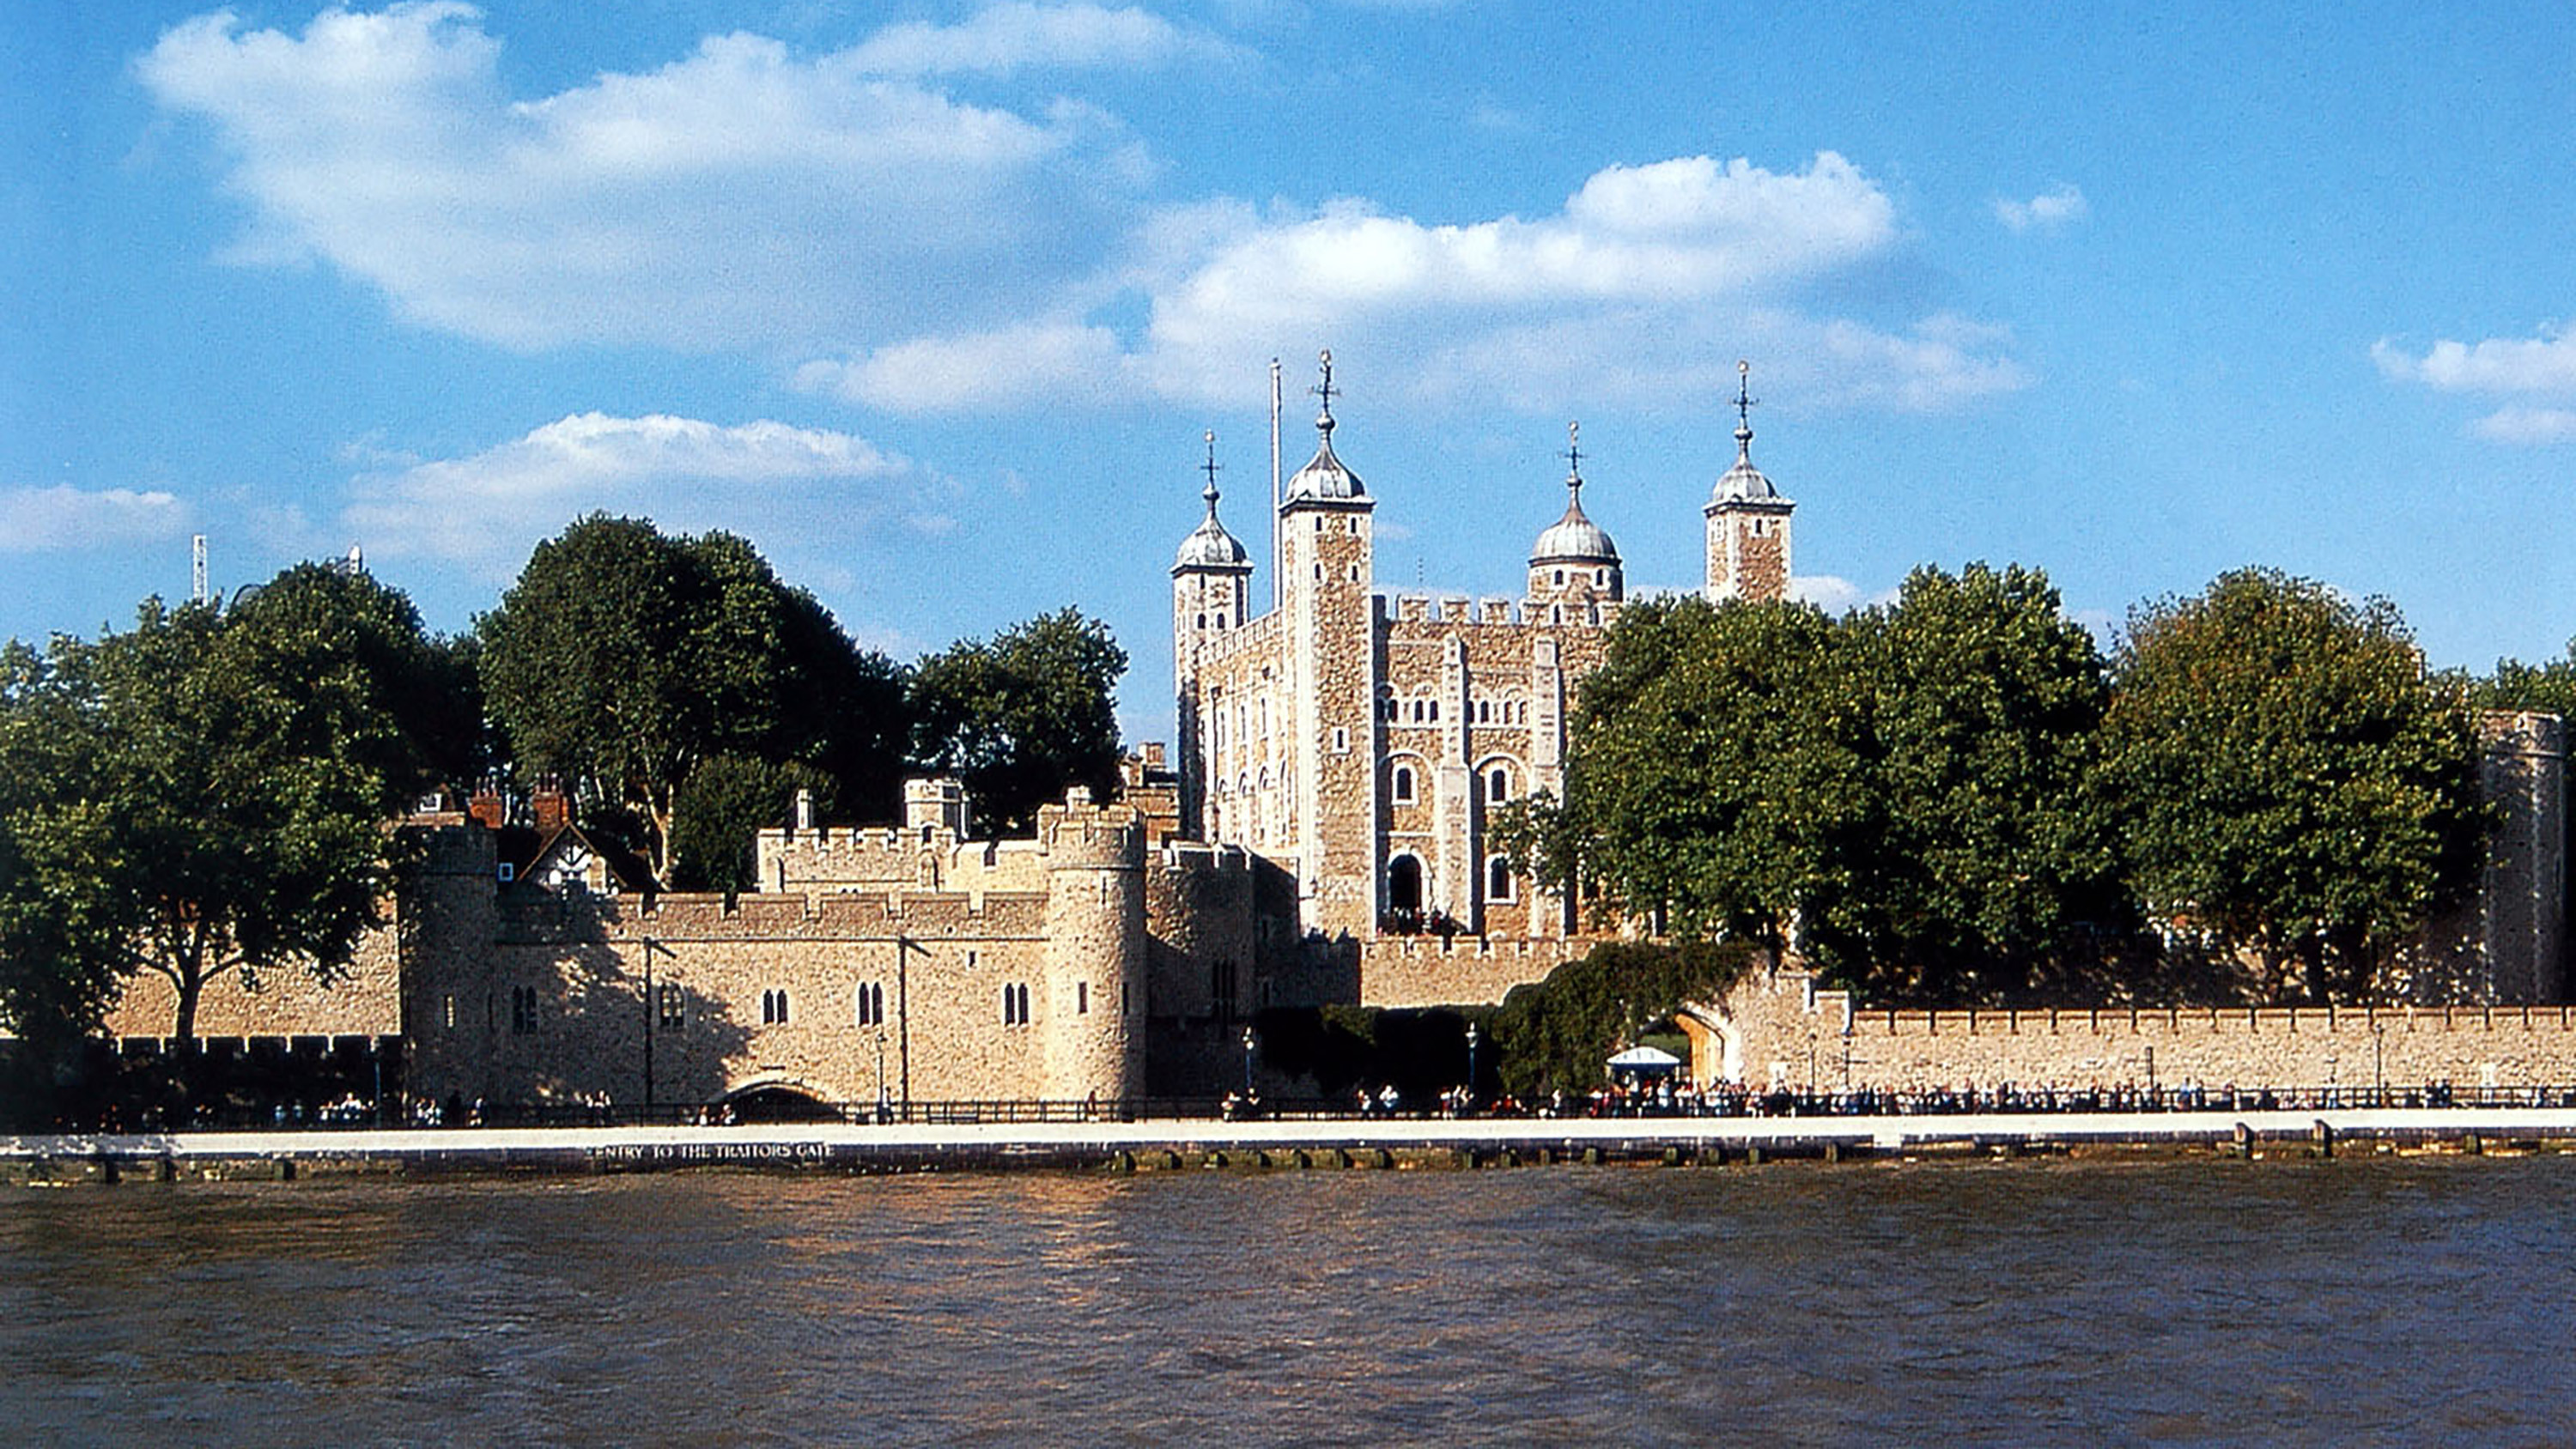 Tower of London | Freiheitsentzug, Strafe und Folter – Duncan McCauley